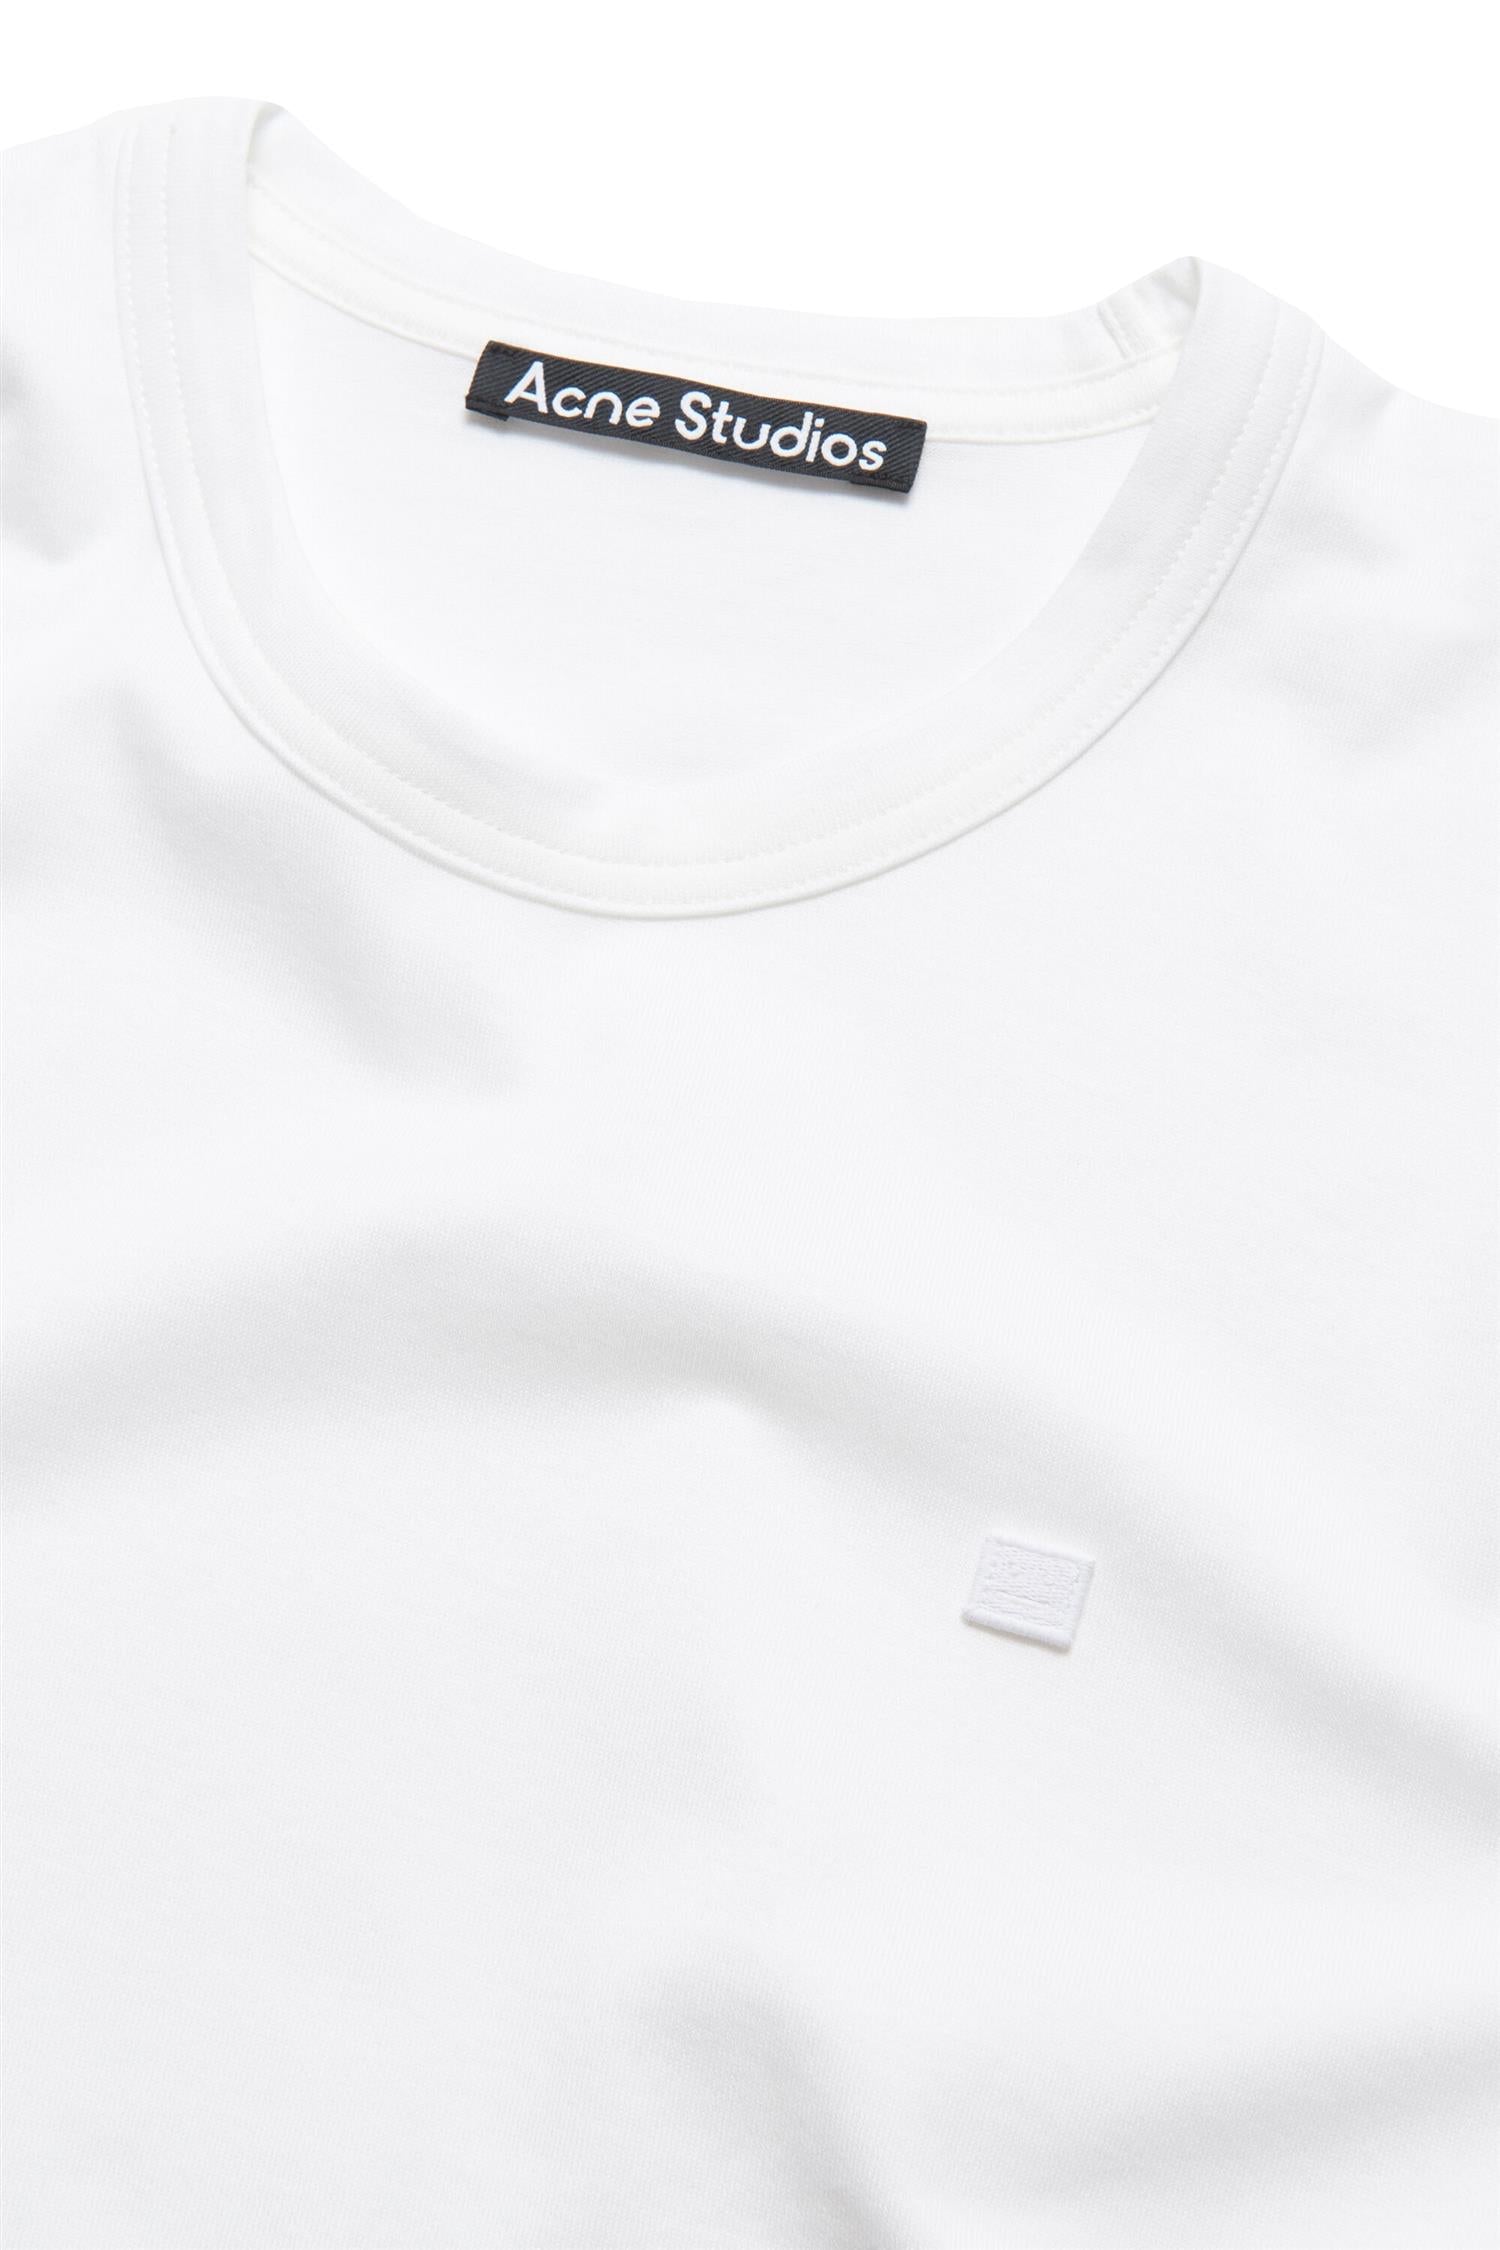 Acne Mini Face Logo T-shirt T-shirt Hvit - modostore.no